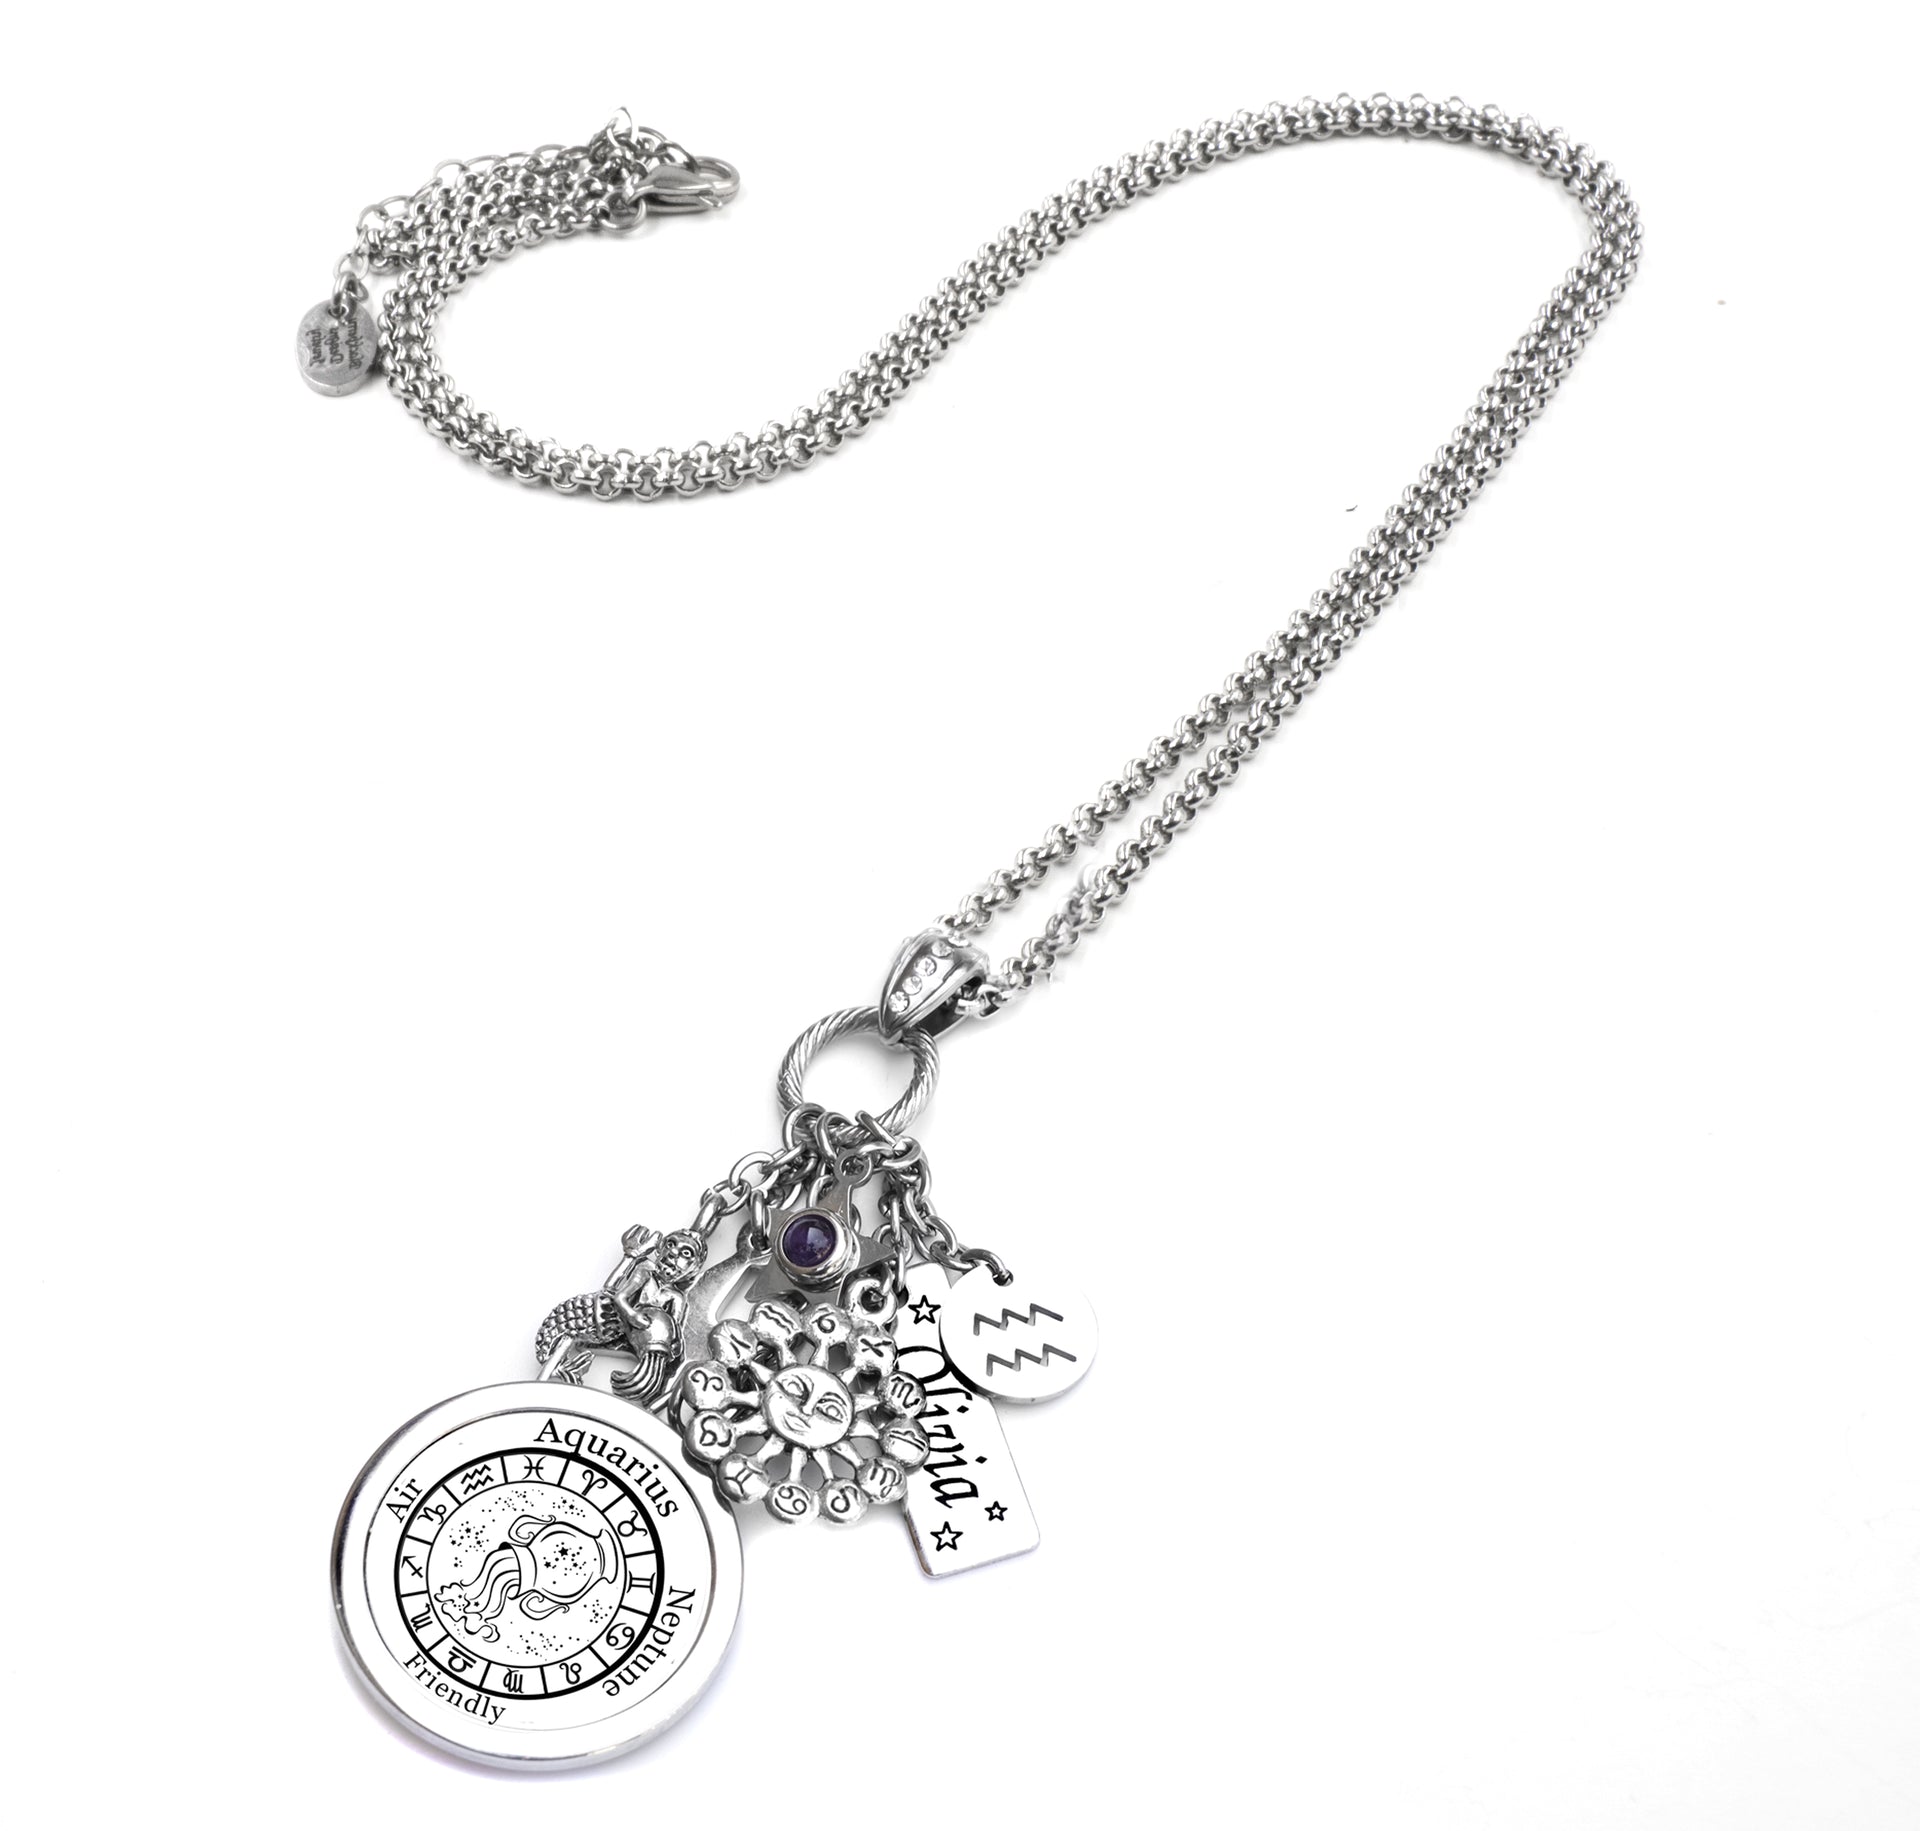 Aquarius horoscope necklace